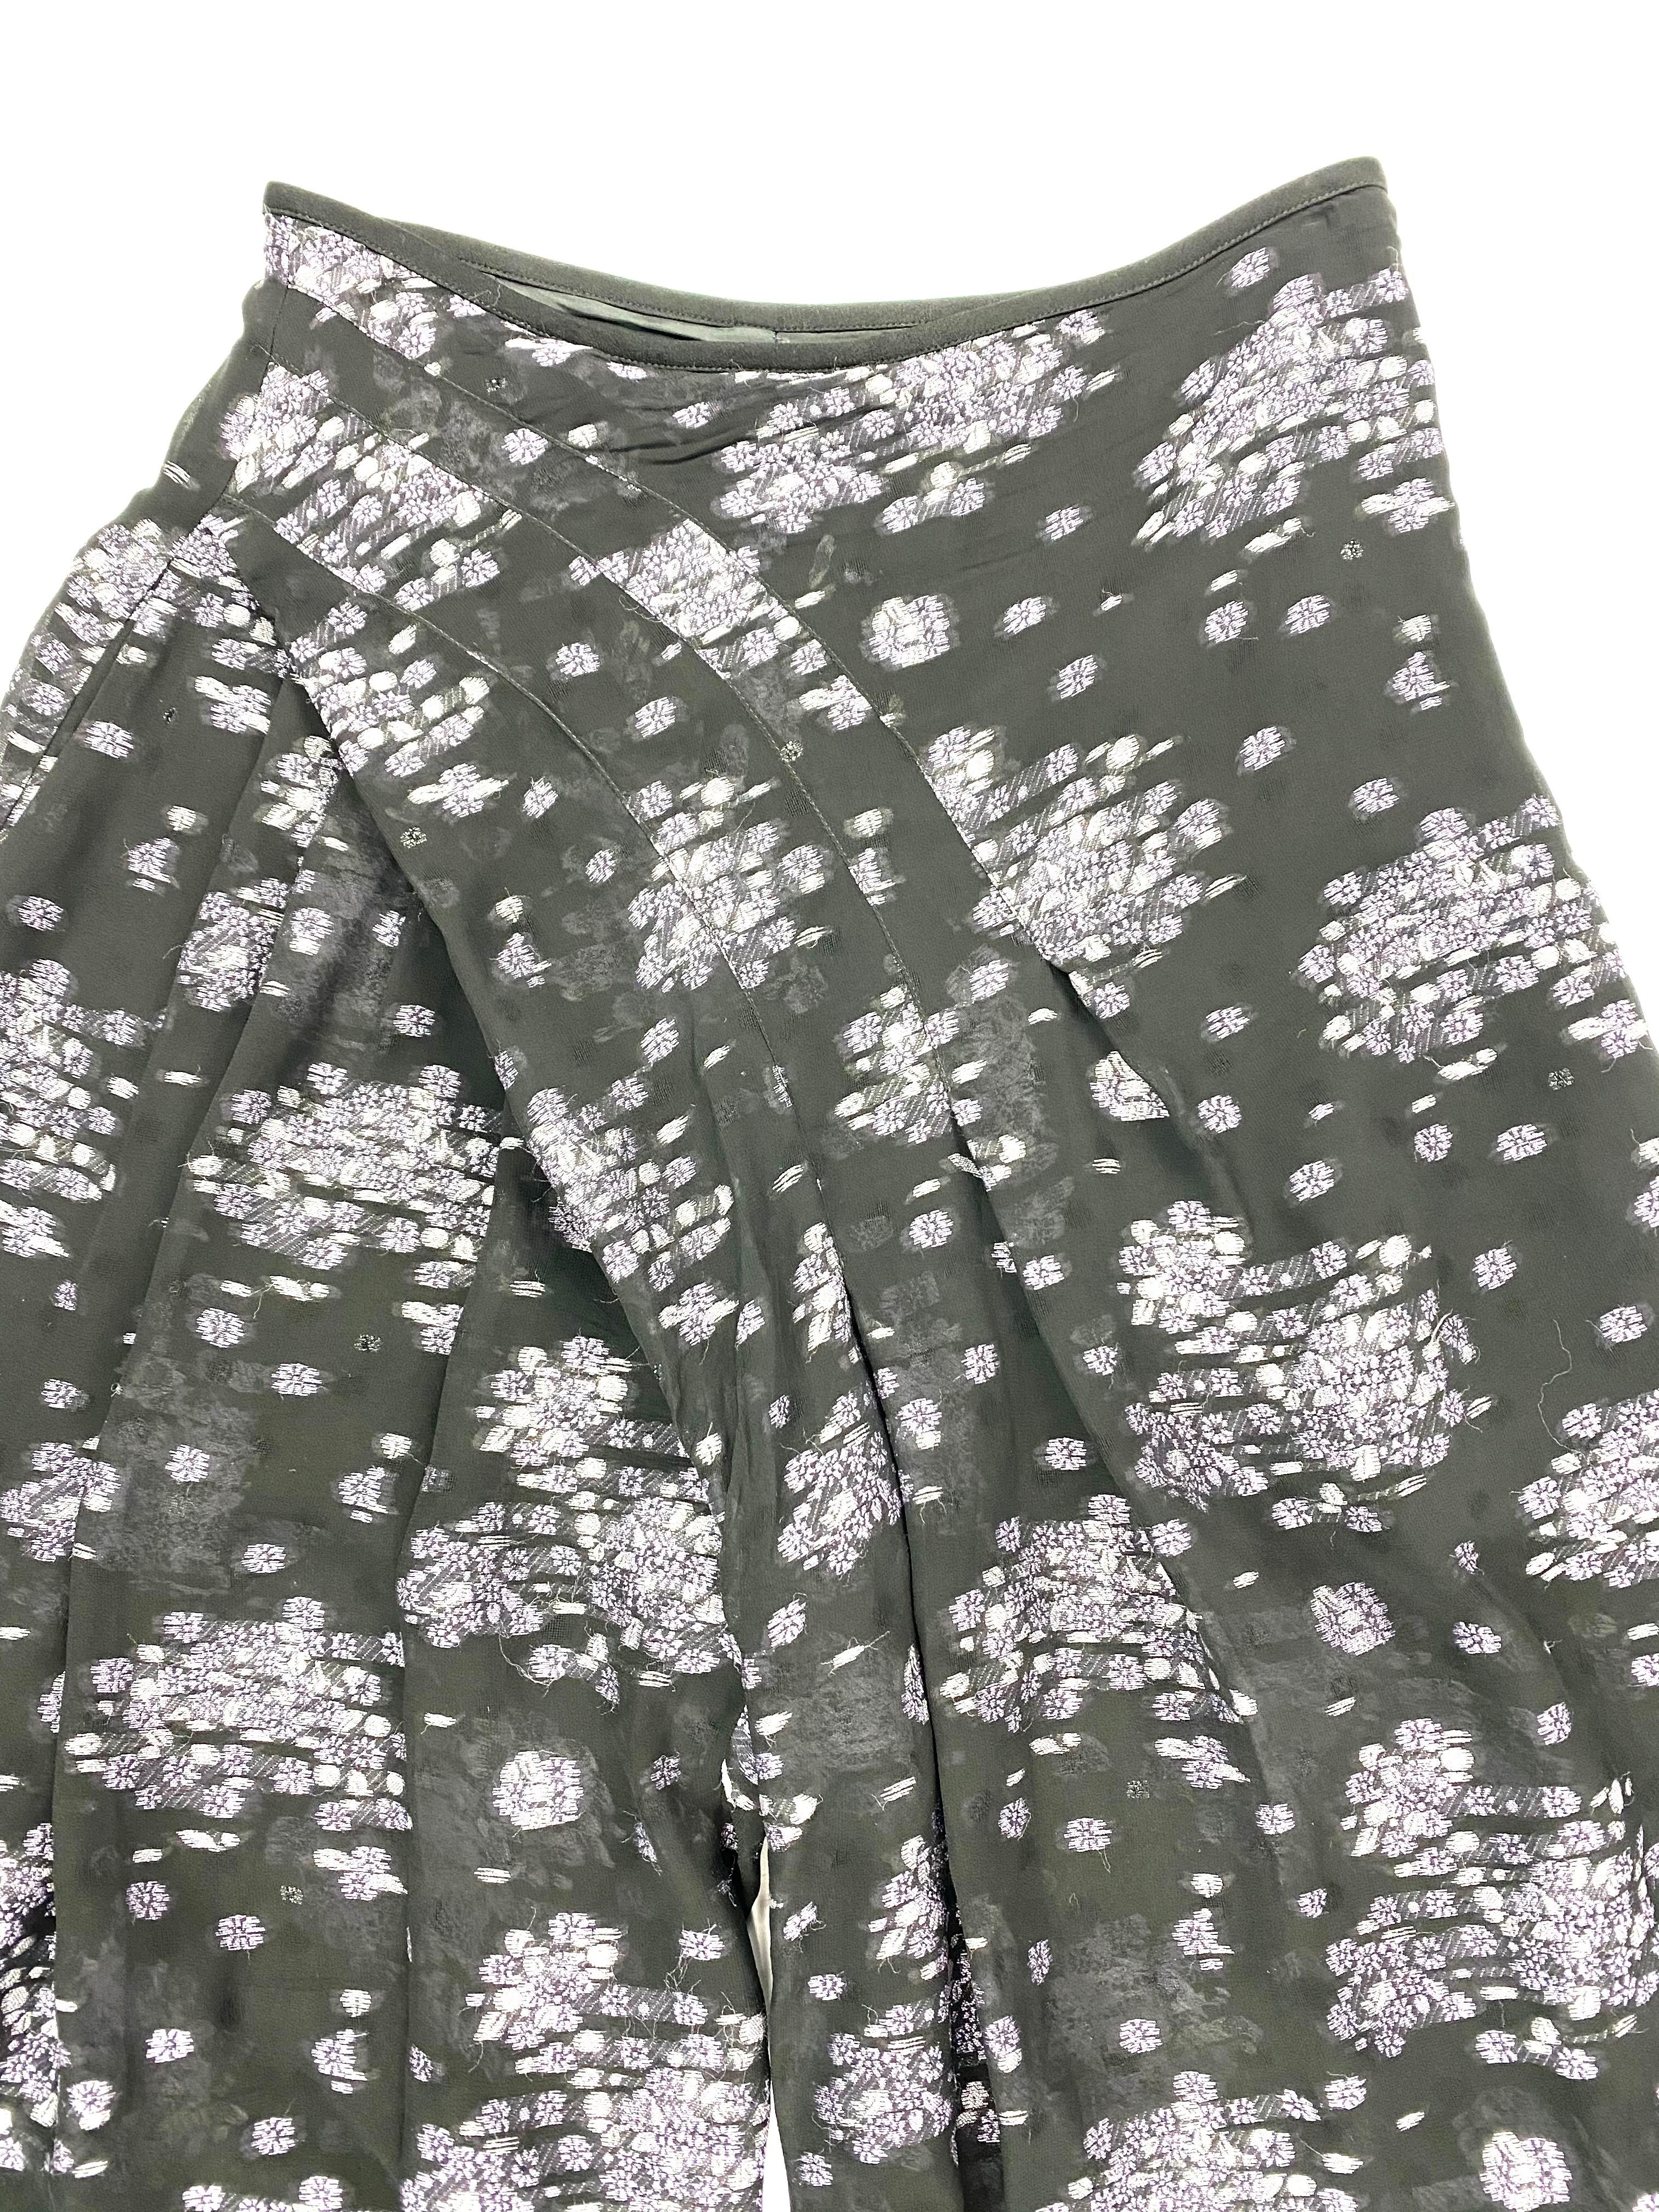 Einzelheiten zum Produkt:

Die Hose hat eine weite Passform mit lila Blumendruck, seitlichem Reißverschluss und Hakenverschluss. Hergestellt in Japan.